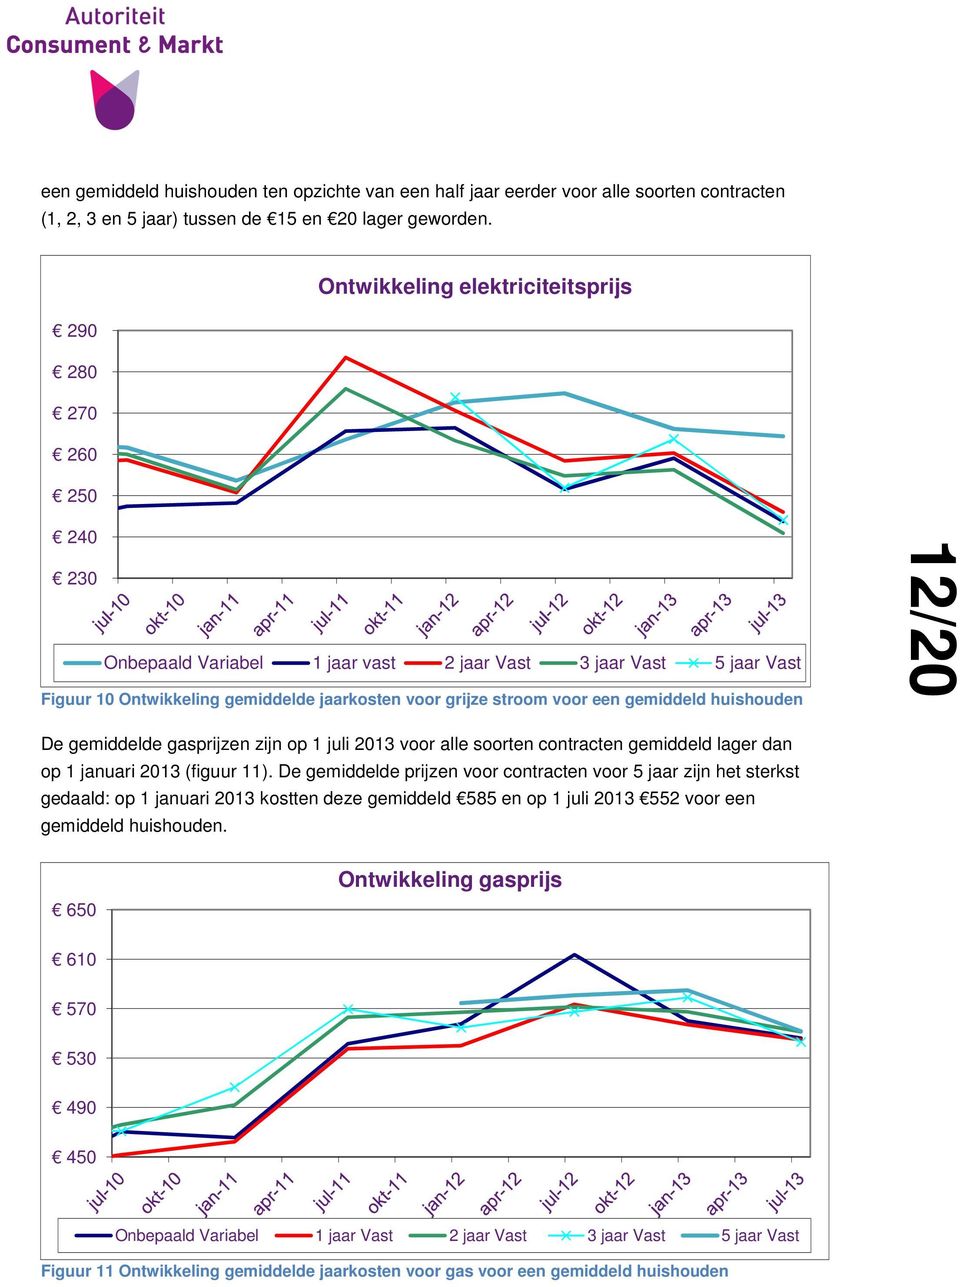 een gemiddeld huishouden 12/20 De gemiddelde gasprijzen zijn op 1 juli 2013 voor alle soorten contracten gemiddeld lager dan op 1 januari 2013 (figuur 11).